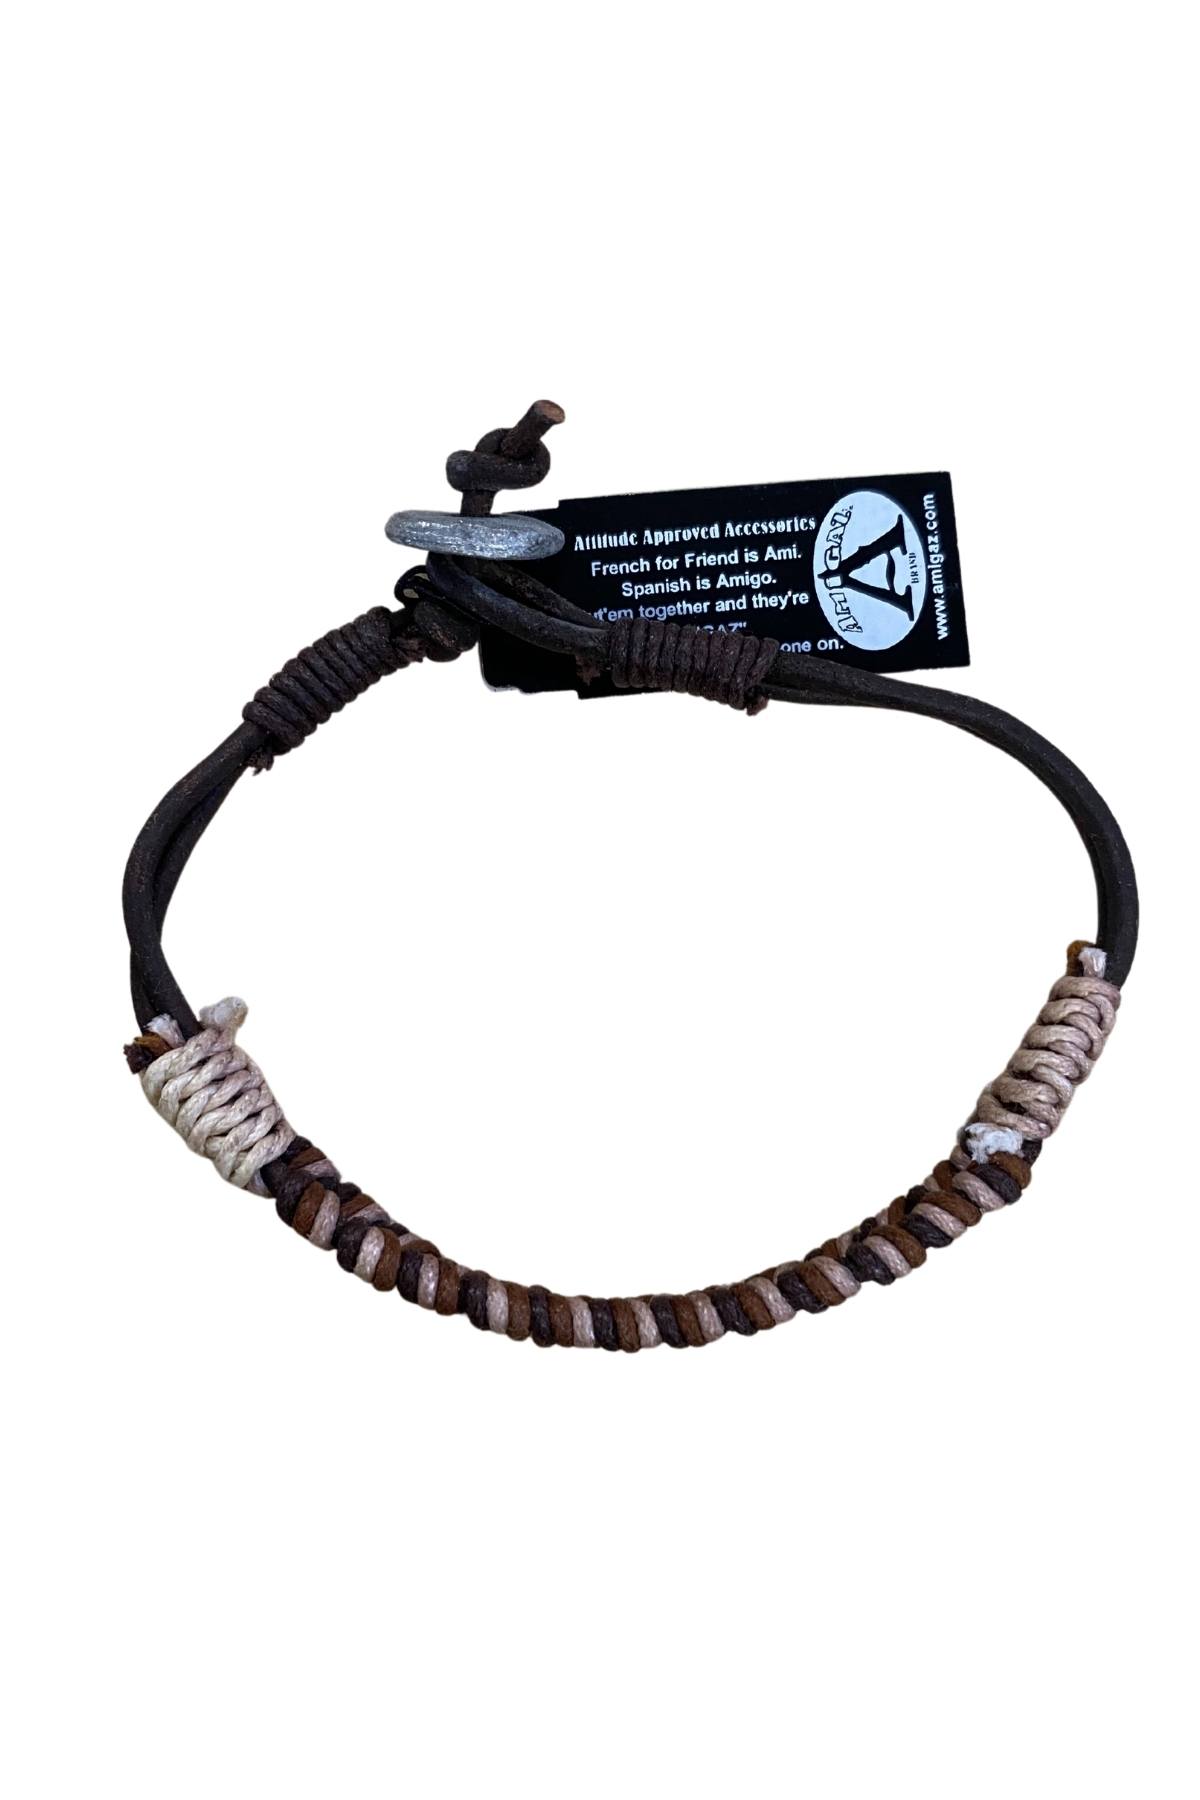 AmiGAZ Brown Tone Hemp Braid Leather Bracelet